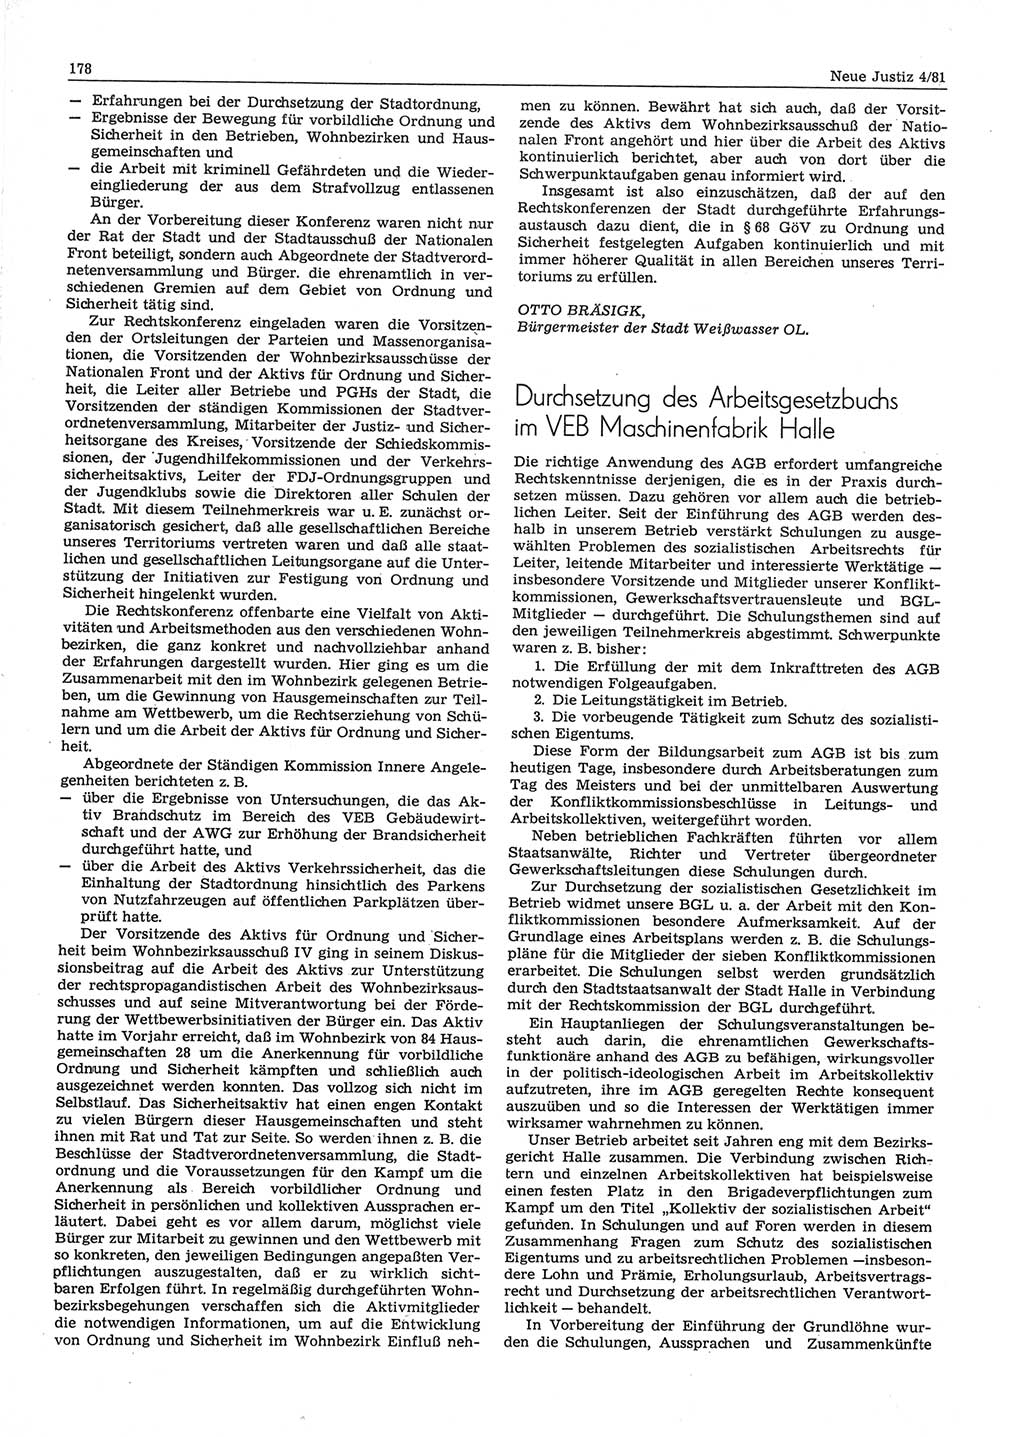 Neue Justiz (NJ), Zeitschrift für sozialistisches Recht und Gesetzlichkeit [Deutsche Demokratische Republik (DDR)], 35. Jahrgang 1981, Seite 178 (NJ DDR 1981, S. 178)